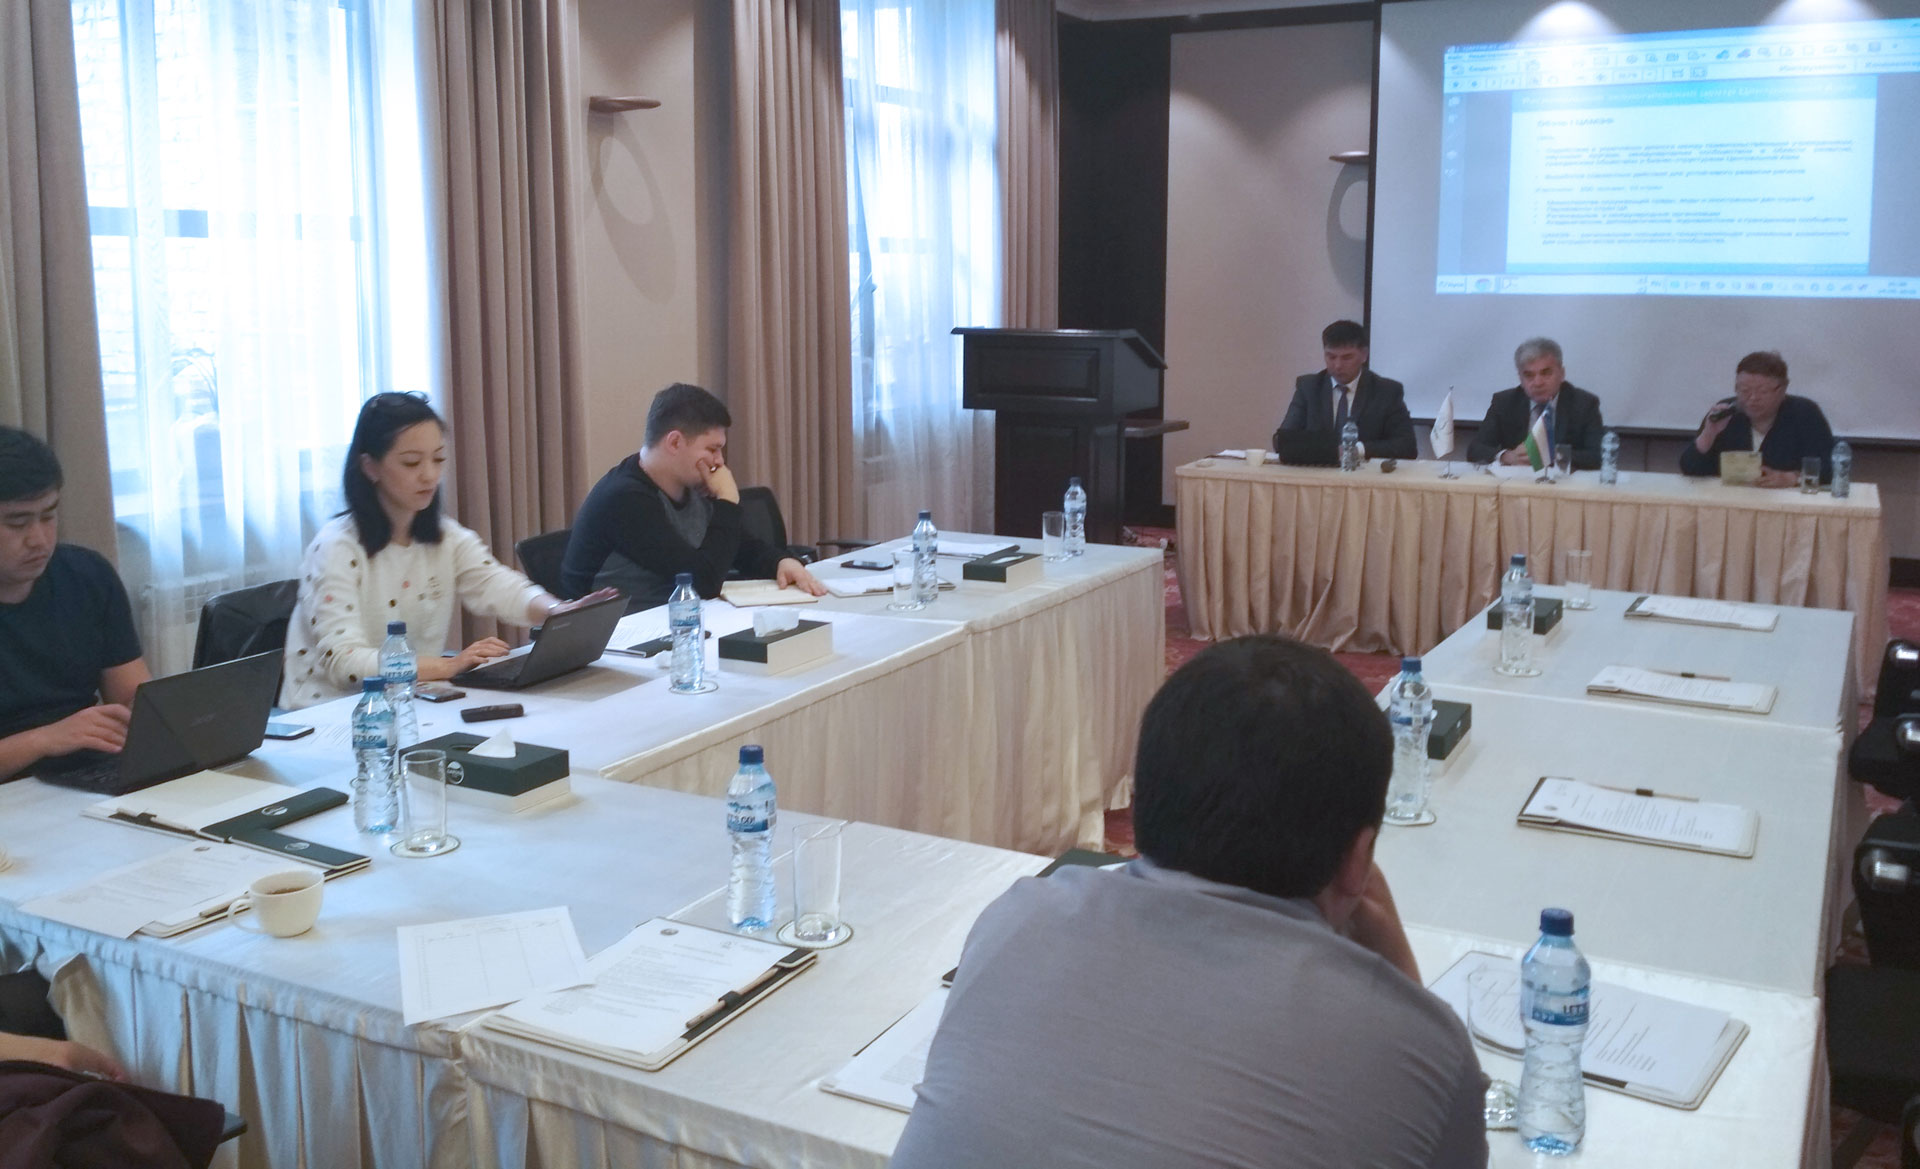 CAIEF 2018 briefing in Kyrgyzstan